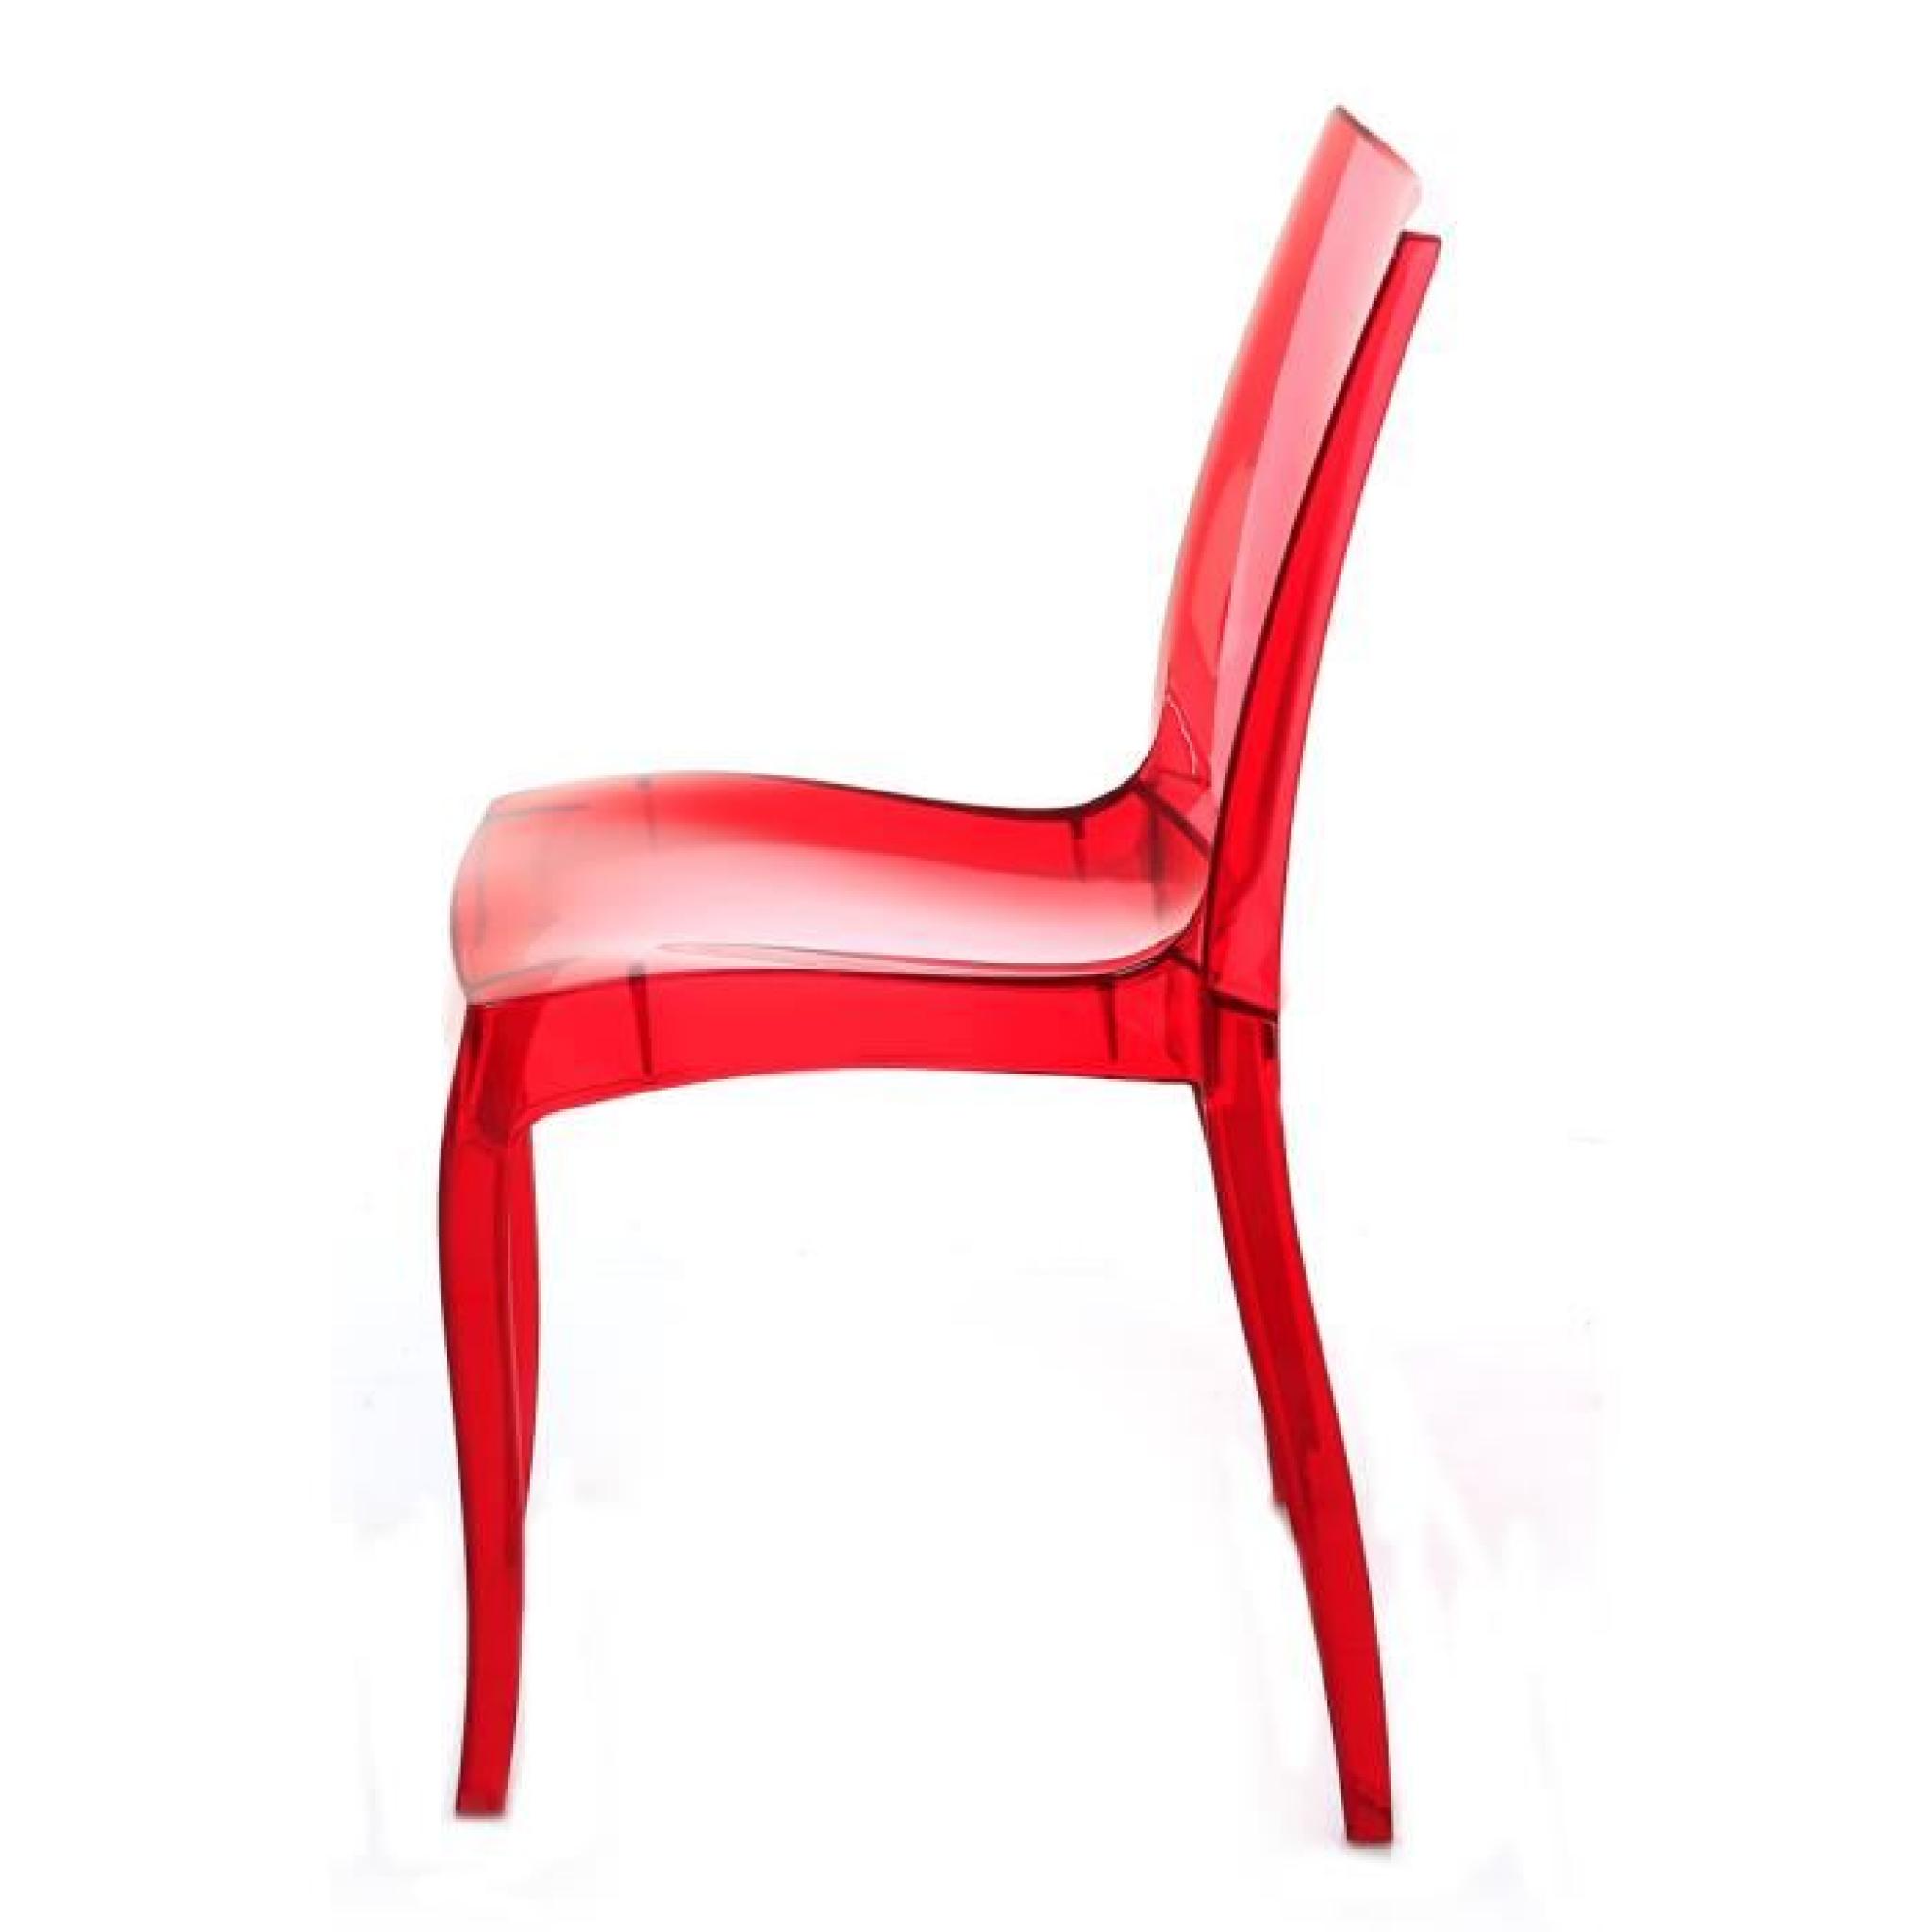 4x Chaise polycarbonate transparente rouge Frost pas cher